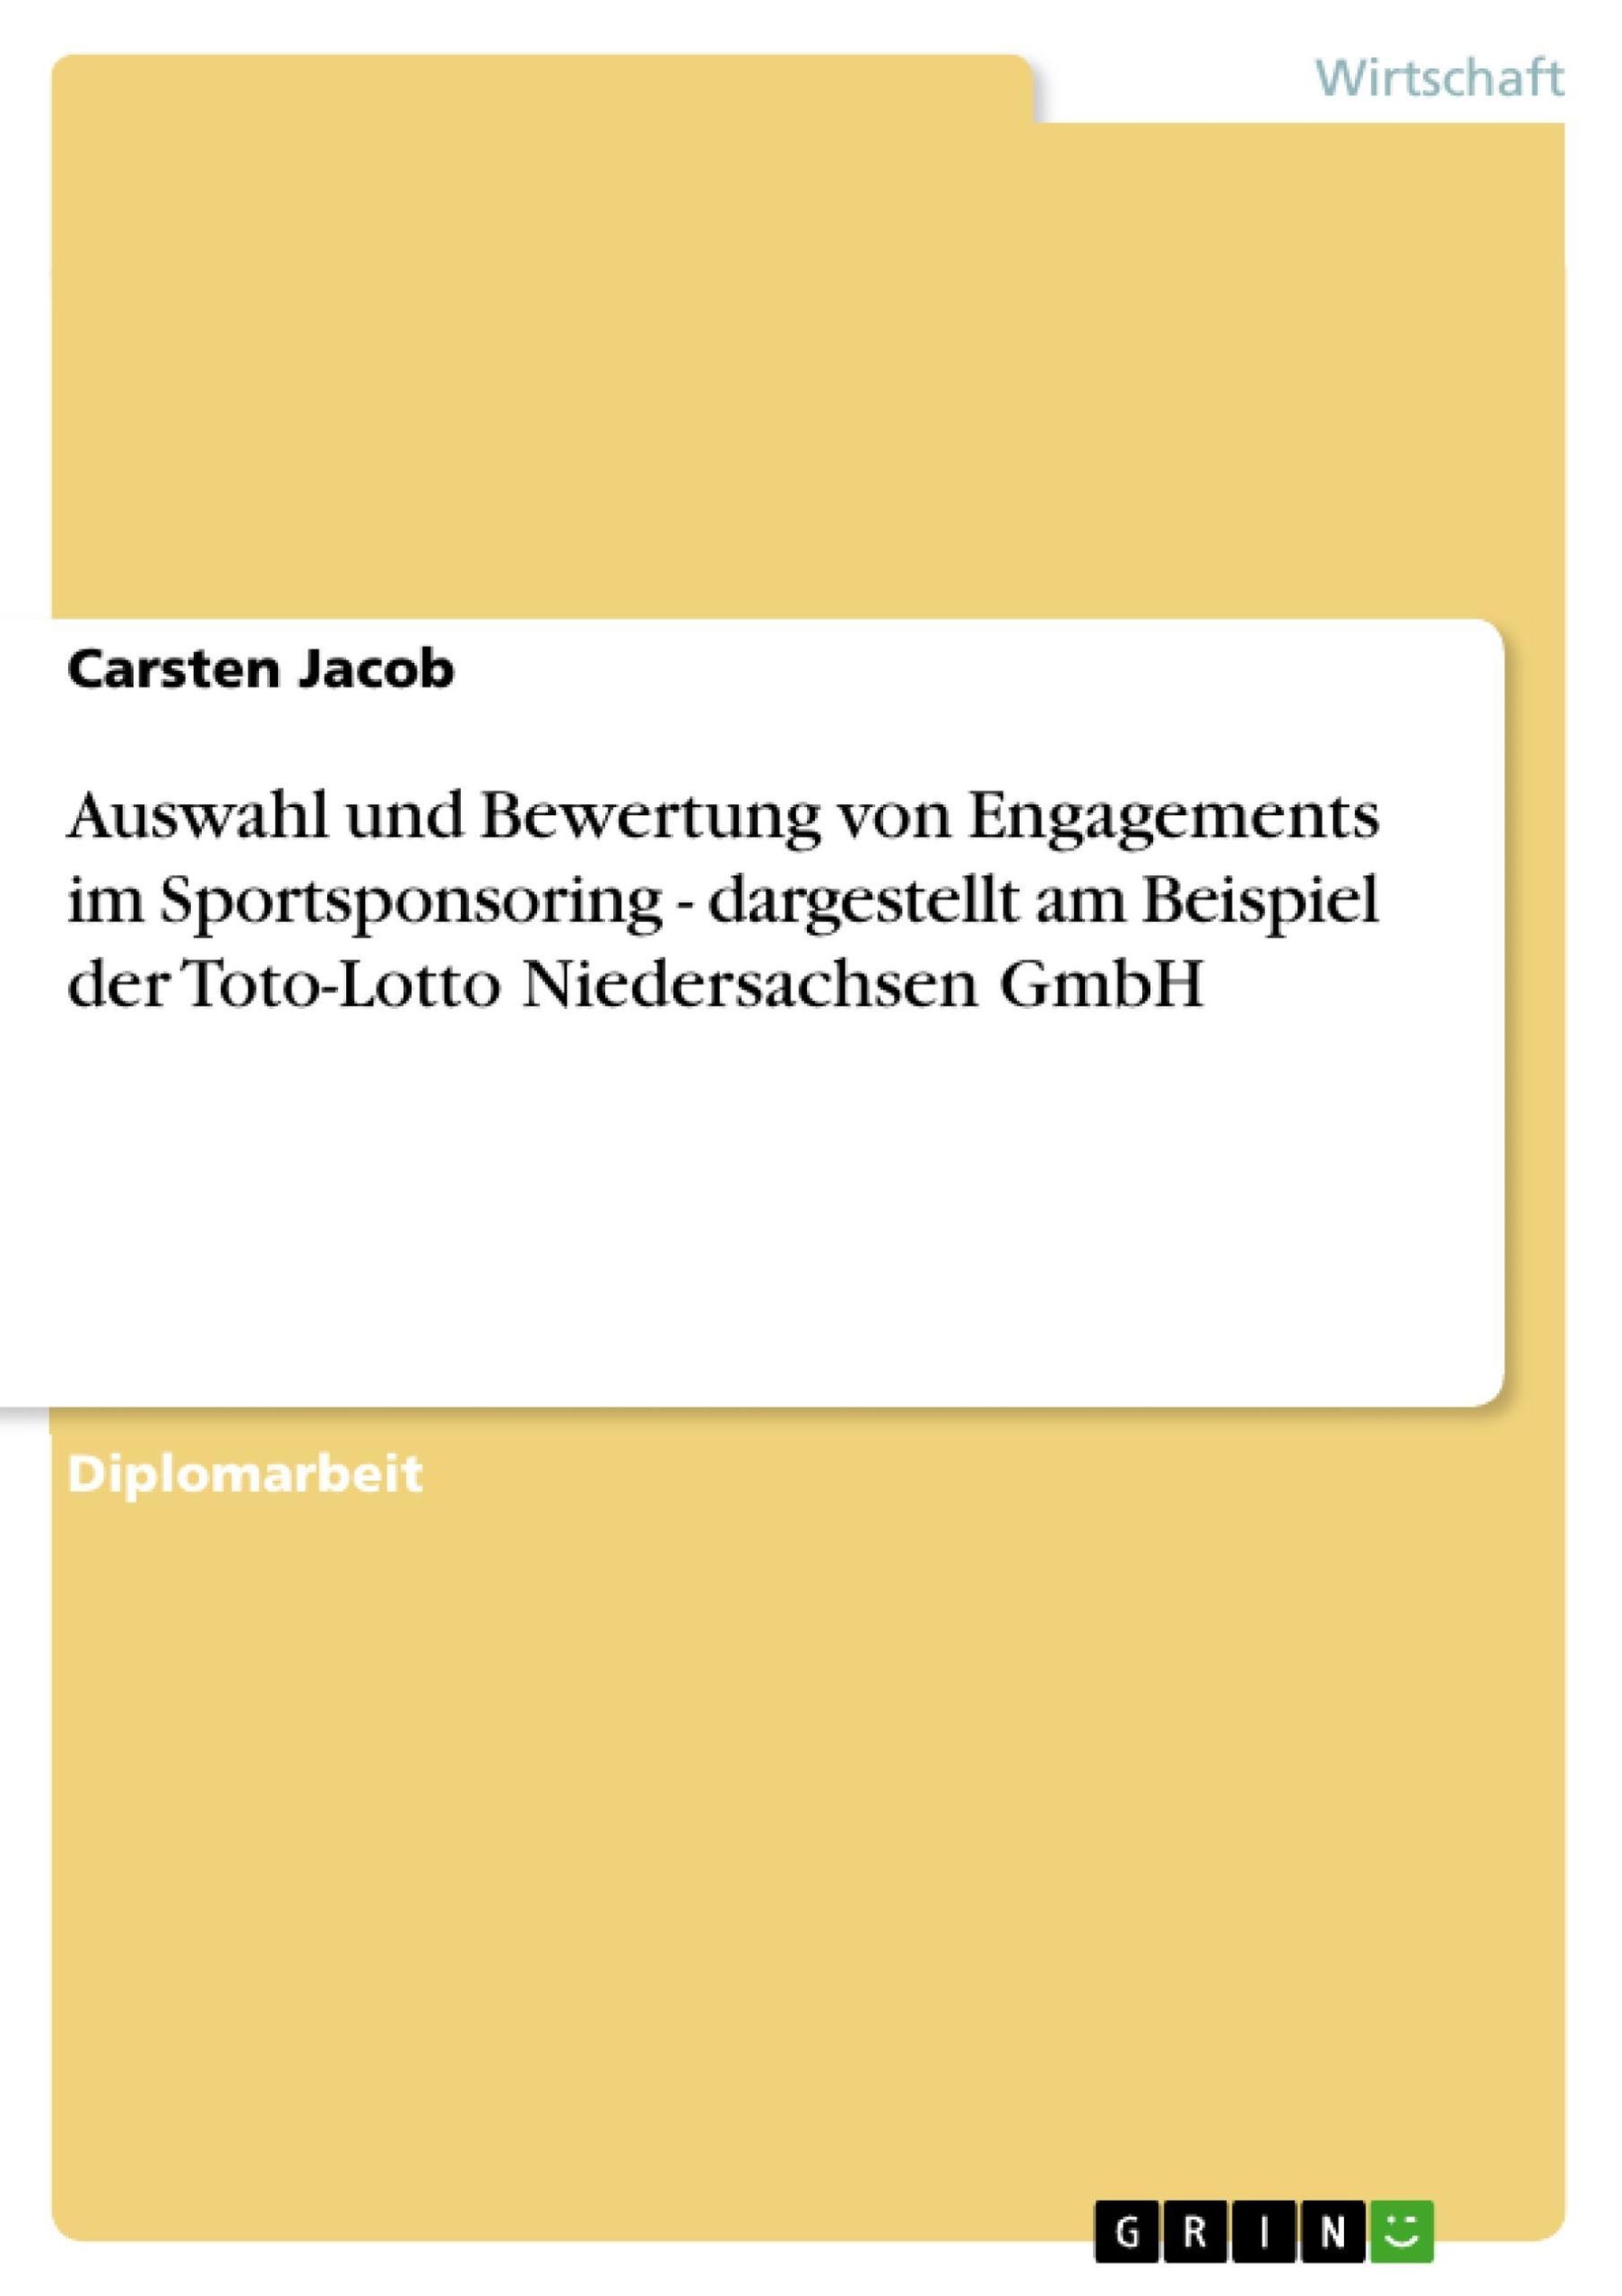 Auswahl und Bewertung von Engagements im Sportsponsoring - dargestellt am  Beispiel der Toto-Lotto Niedersachsen GmbH eBook v. Carsten Jacob | Weltbild